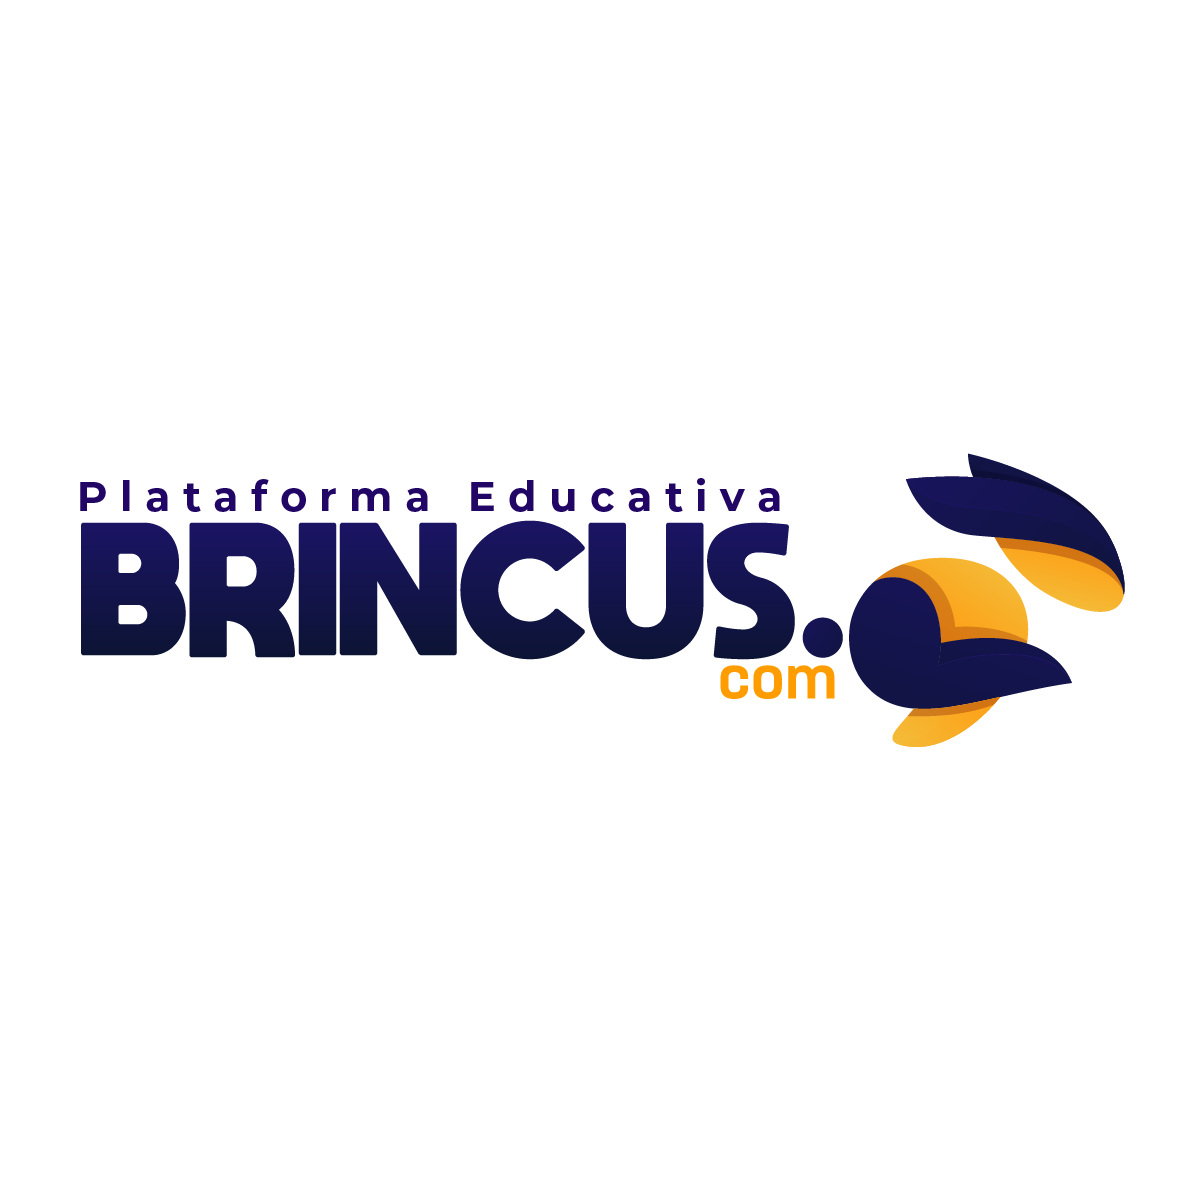 (c) Brincus.com